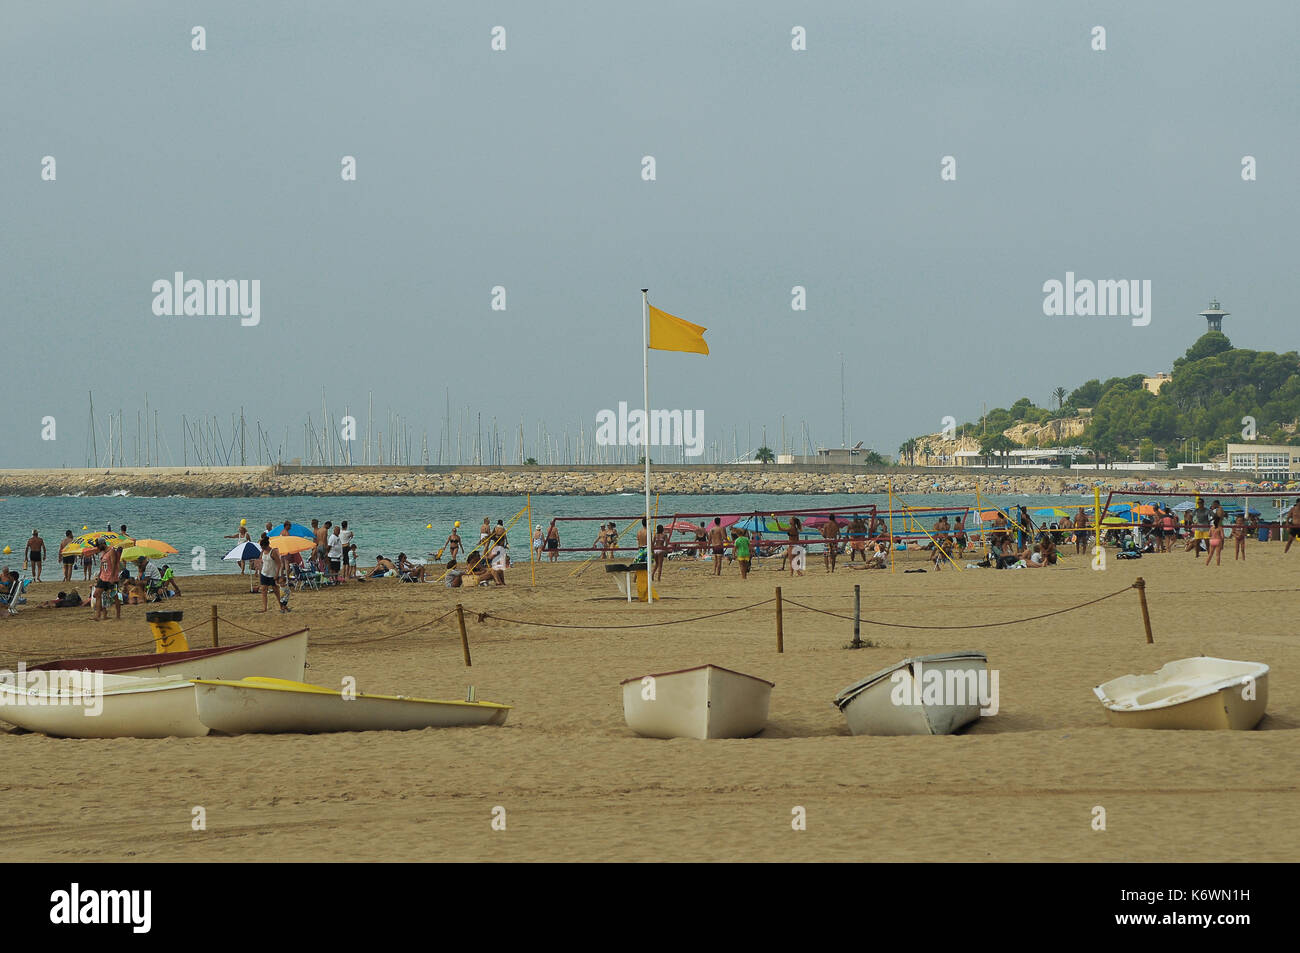 La vida de playa en España Foto de stock